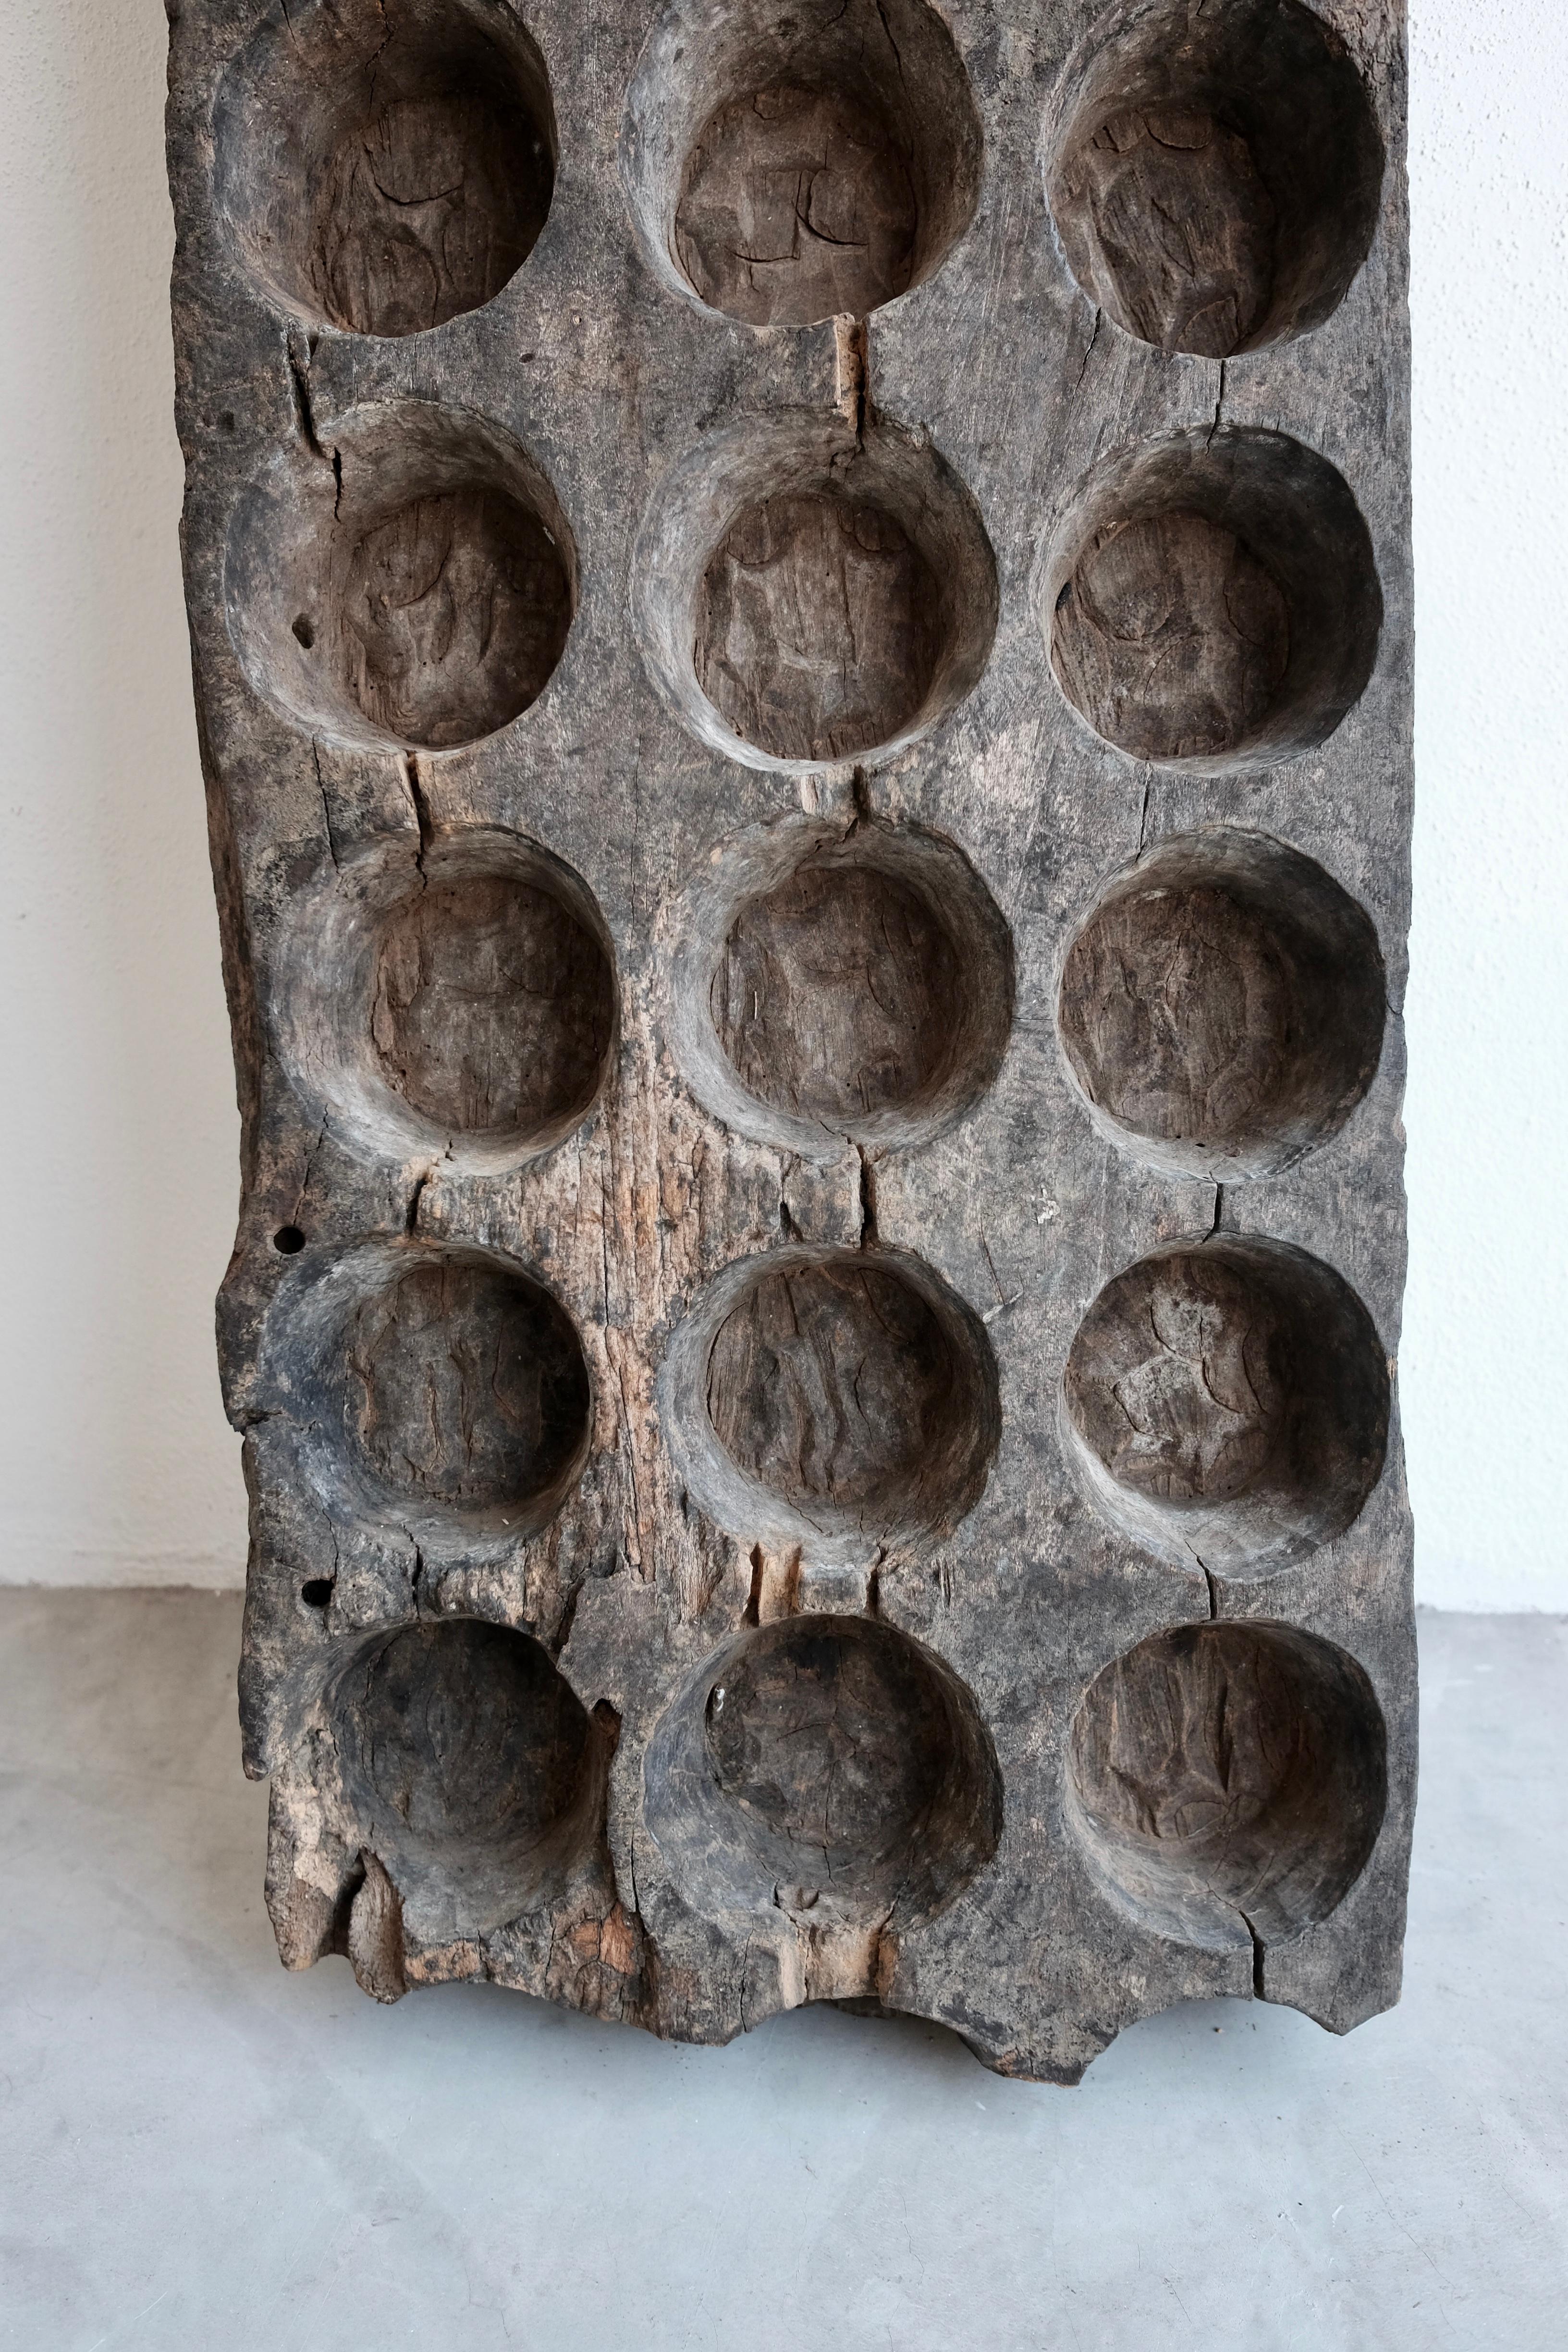 Rustic Wood Mold Press from Juchitan, Oaxaca, Mexico